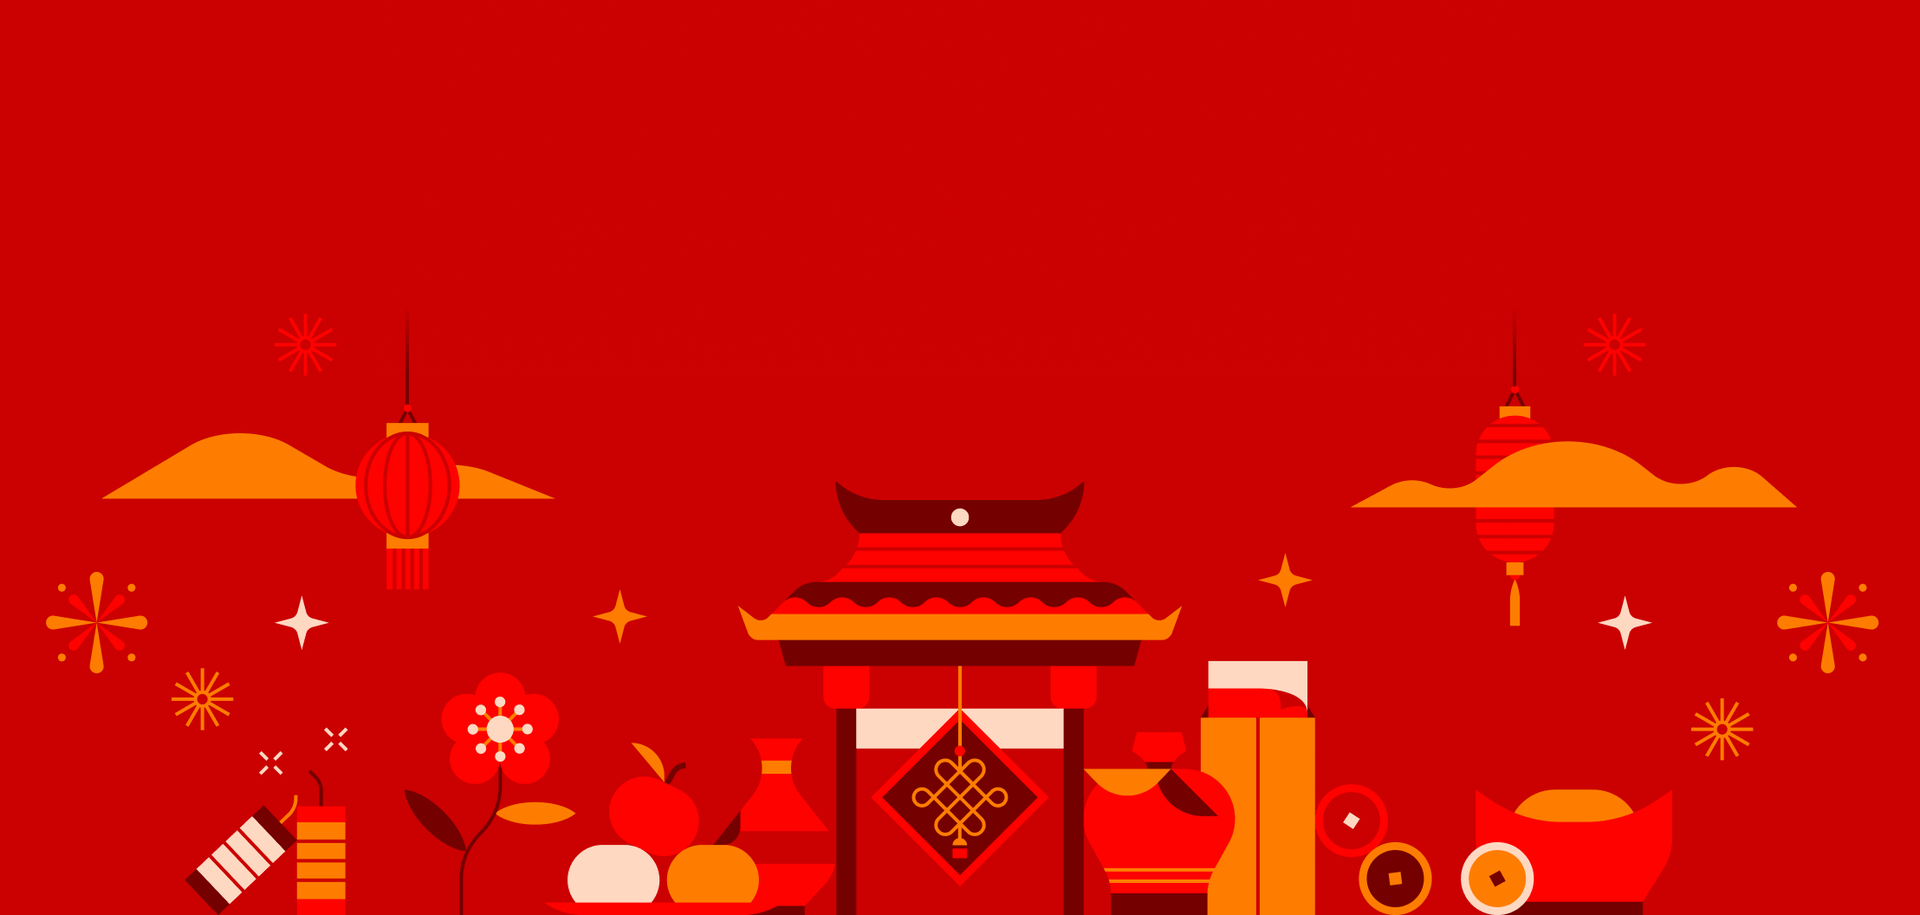 Notificación de días festivos: días festivos del año nuevo chino